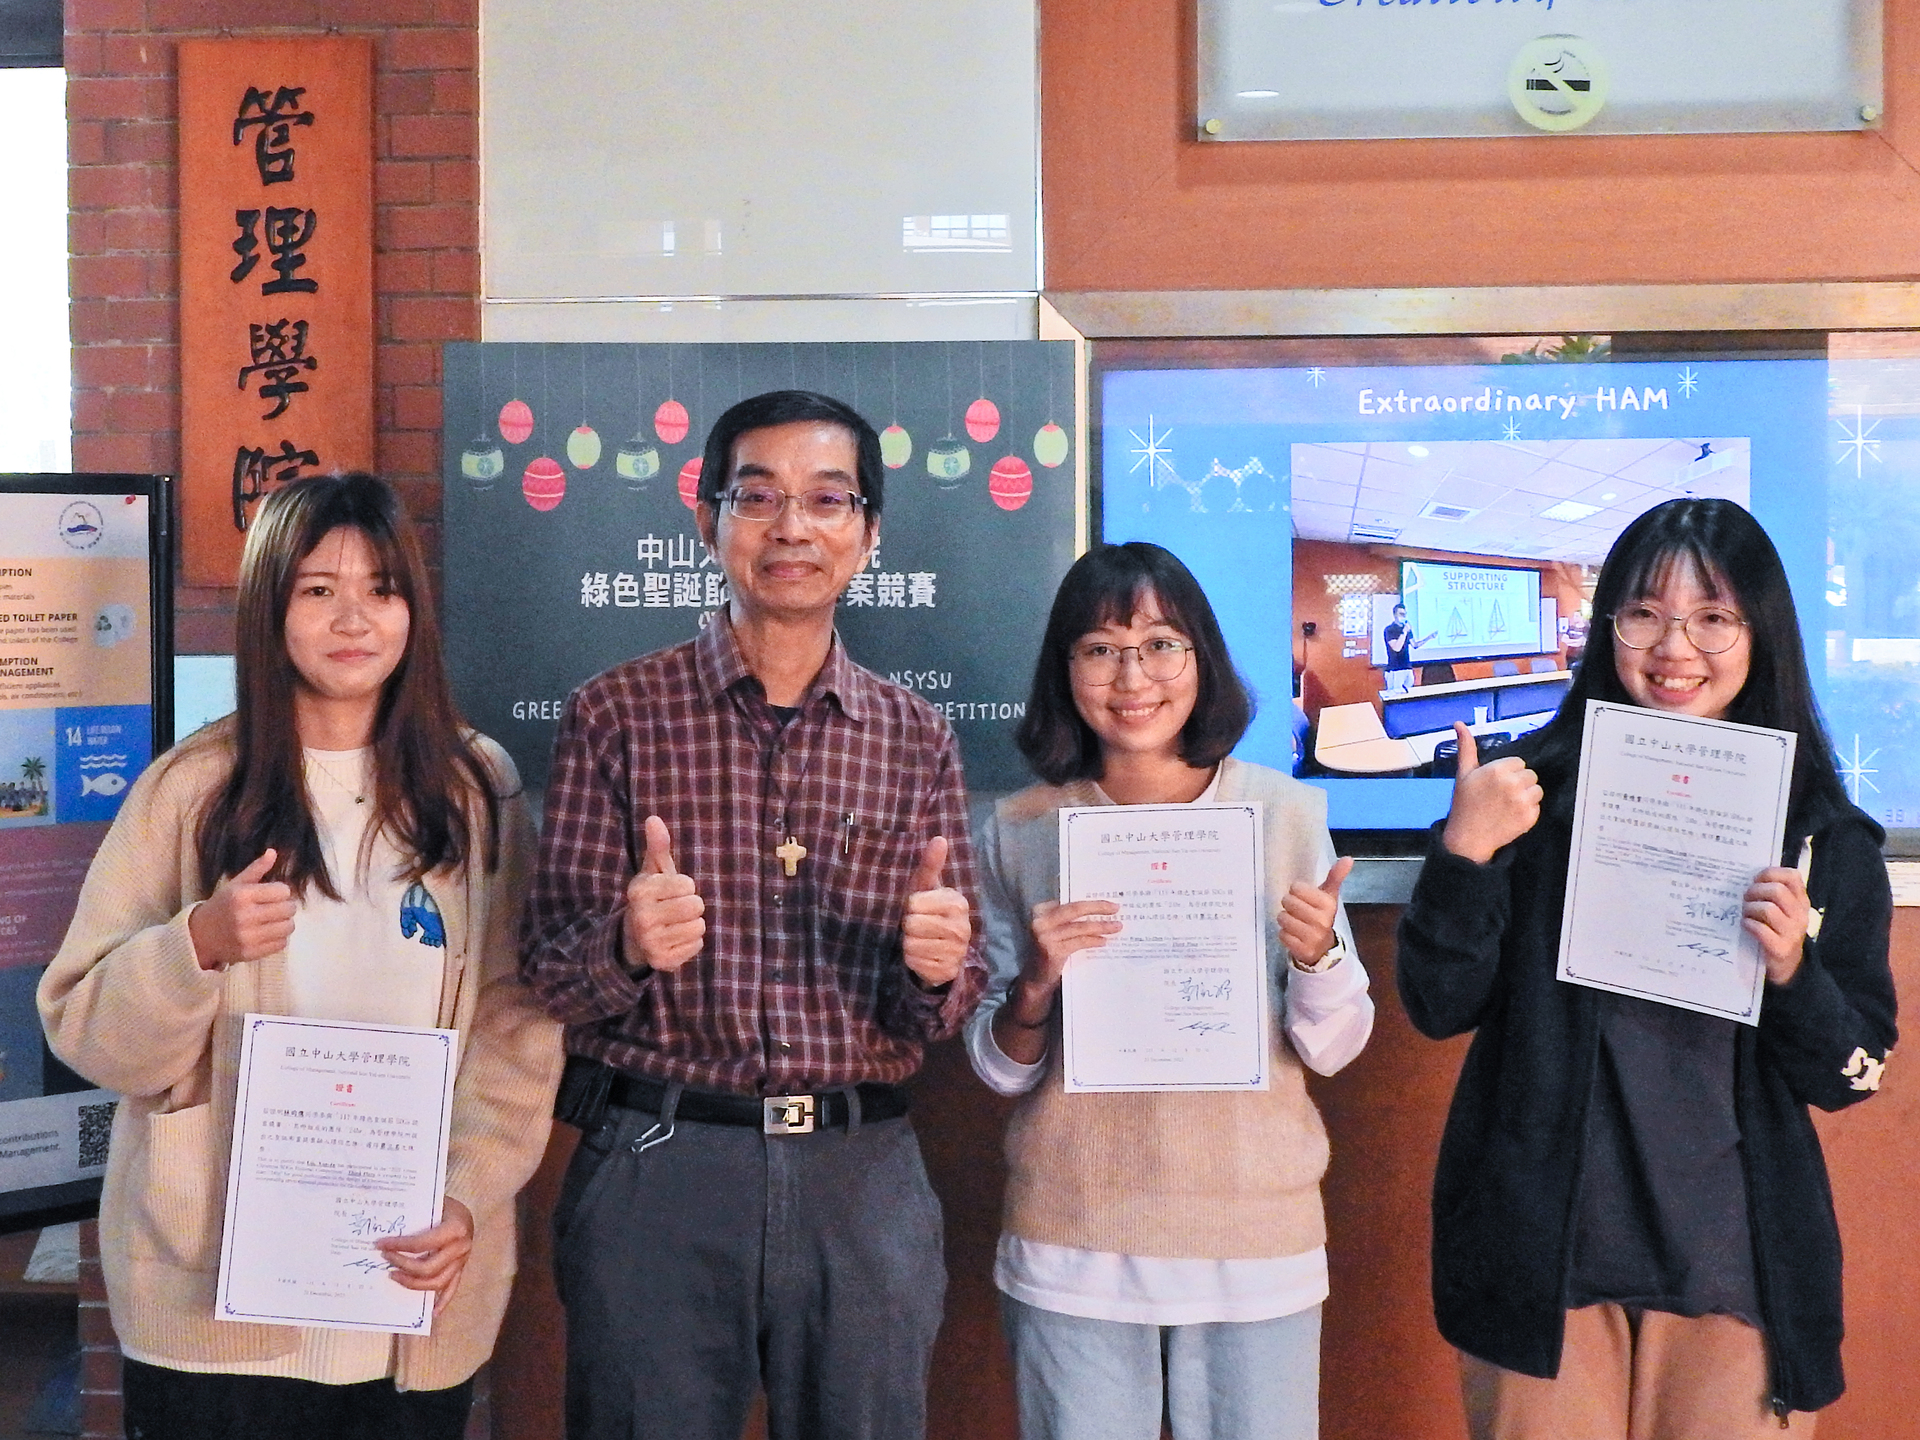 第三名隊伍「24Hr」，由大學部企管系的王苡臻、林昀儒、黃靖棠組成，提案以「是誰住在深海的大珊湖裡」為主題，以SDG14(保育海洋生態)為核心理念。